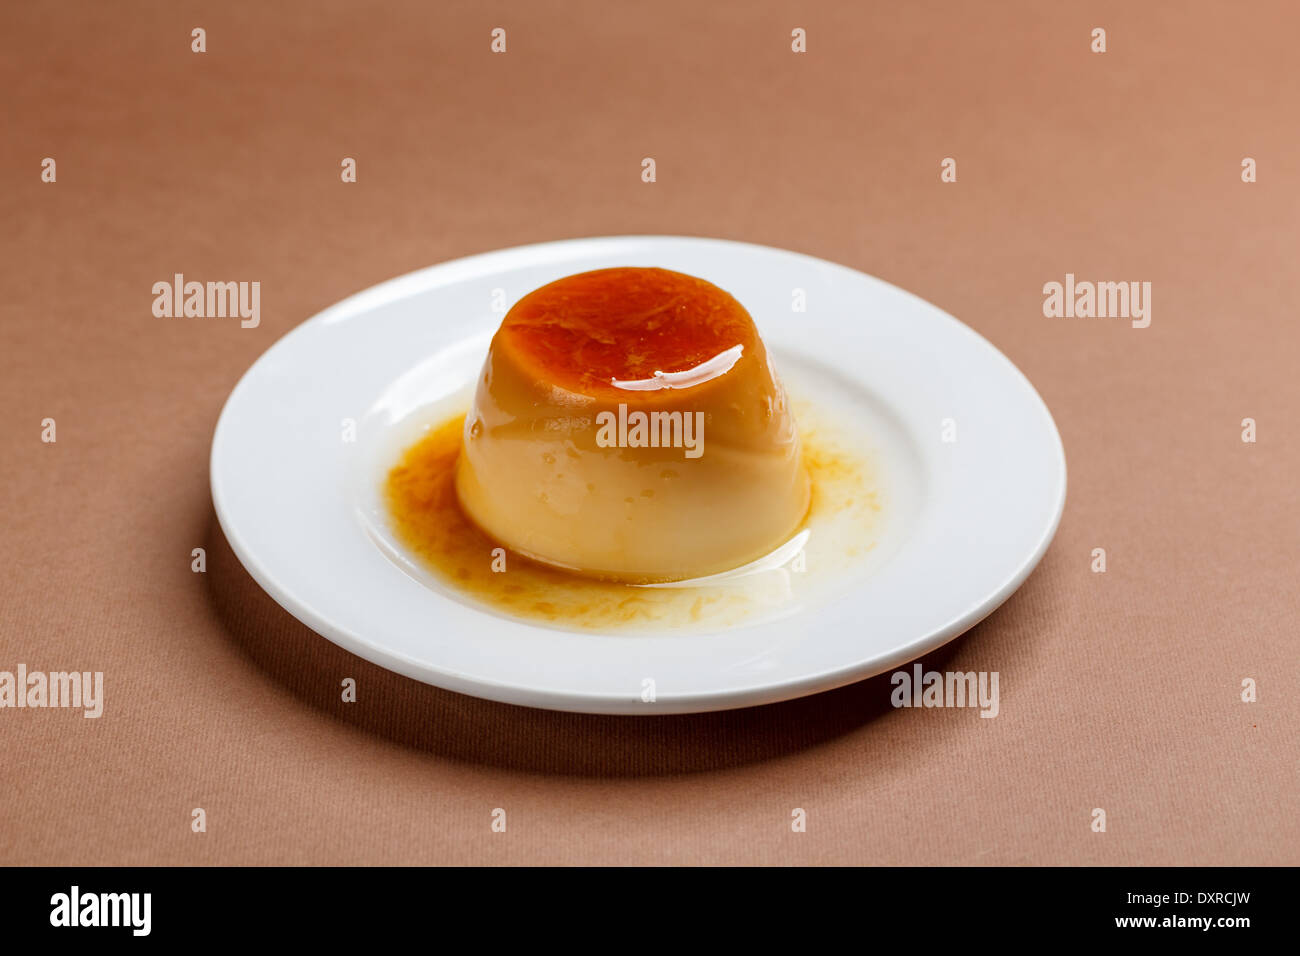 Crème caramel on white plate Banque D'Images